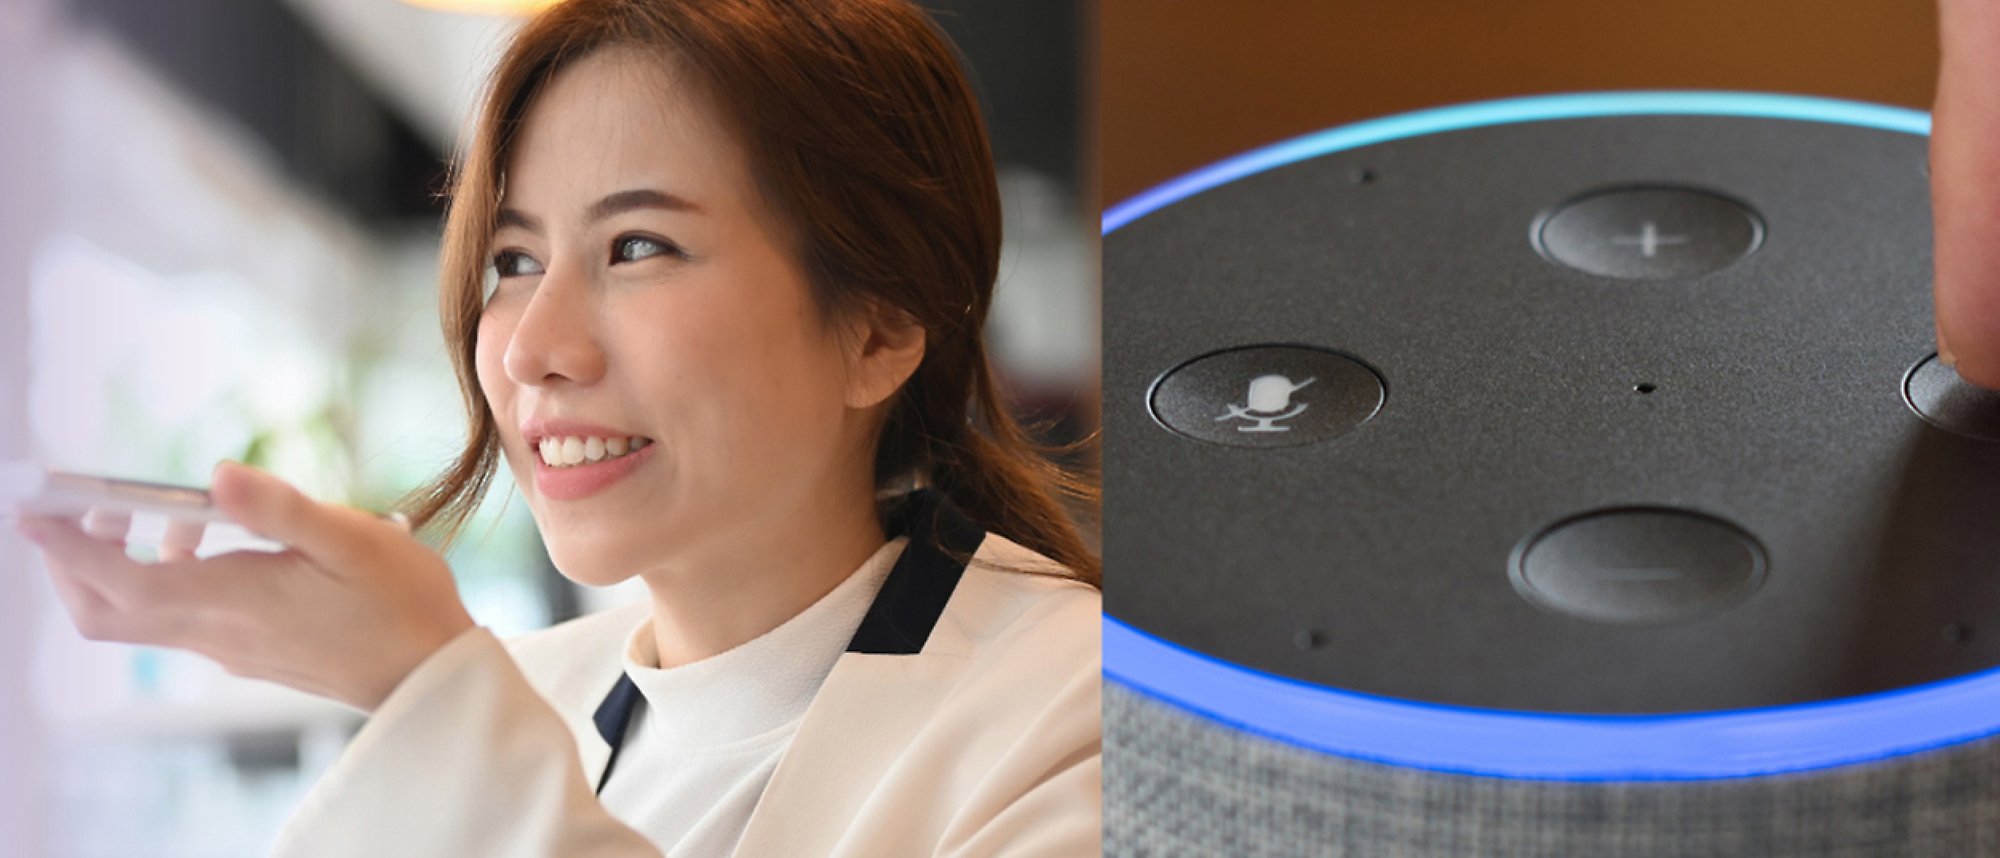 Kobieta rozmawiająca przez telefon i obraz Amazon Alexa z niebieskimi światłami i kontrolkami dźwięku